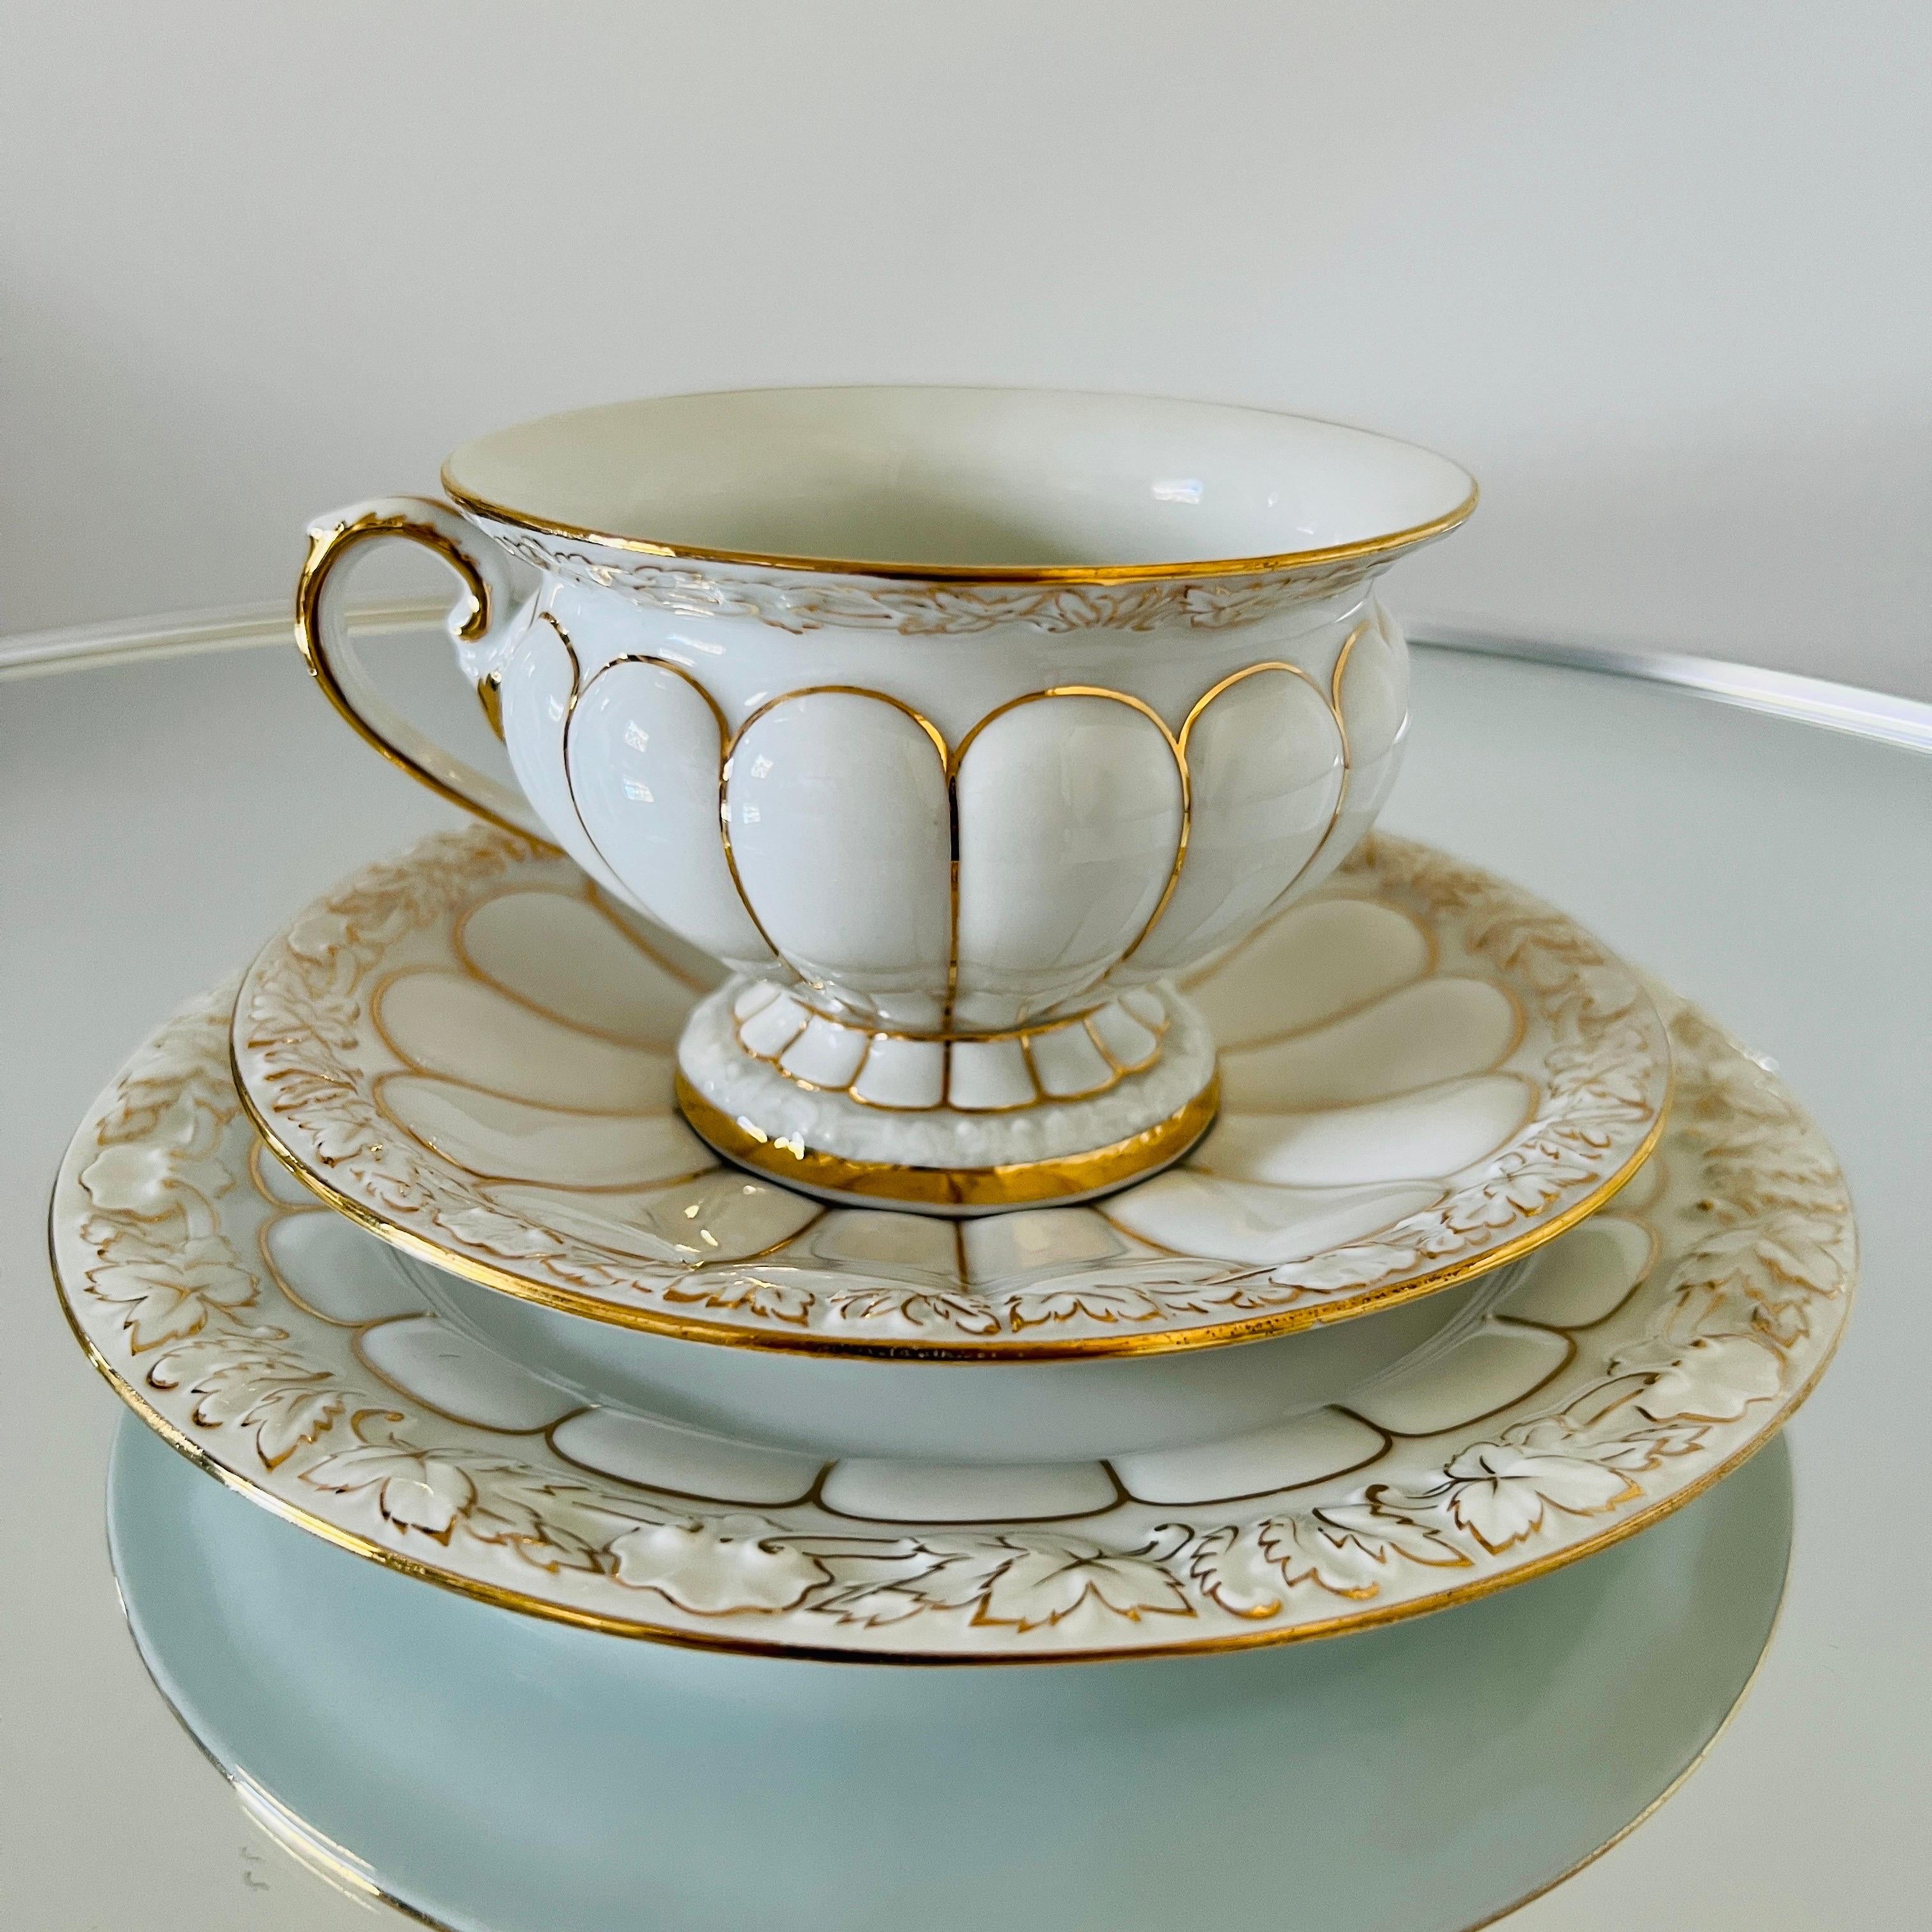 Service en porcelaine de Meissen de la série opulente Golden Baroque, fabriqué à la main en Allemagne.  Le set comprend 40 pièces - 13 tasses à café / 16 soucoupes / 11 assiettes à dessert.  Les tasses, les soucoupes et les assiettes à dessert ont